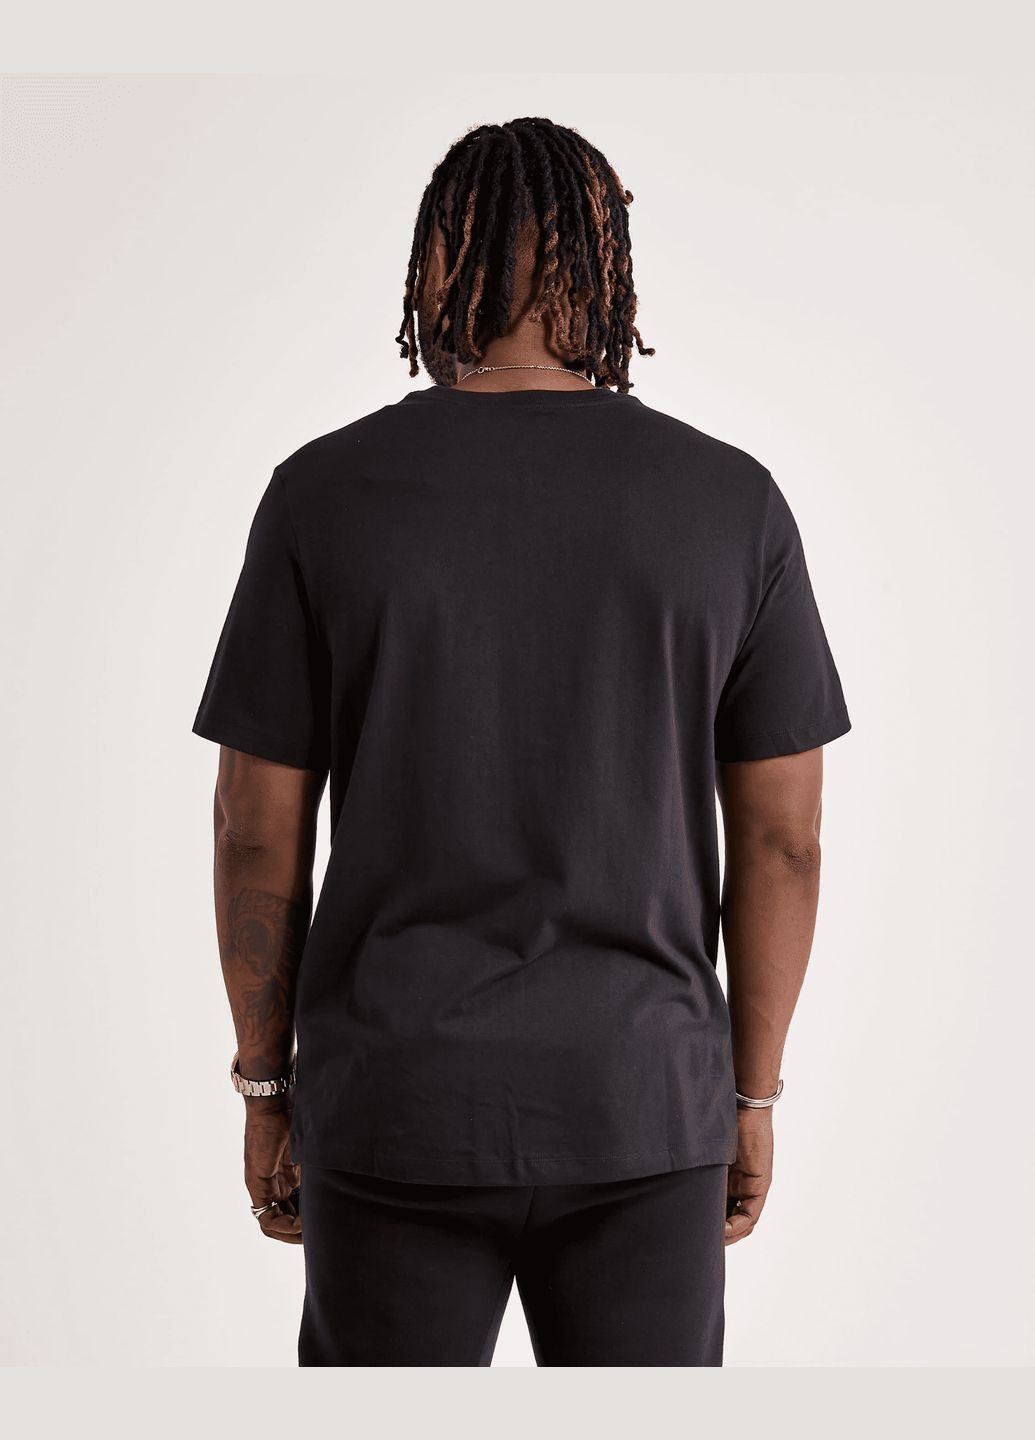 Черная футболка мужская air tretch t-shirt dv1445-010 черная Jordan